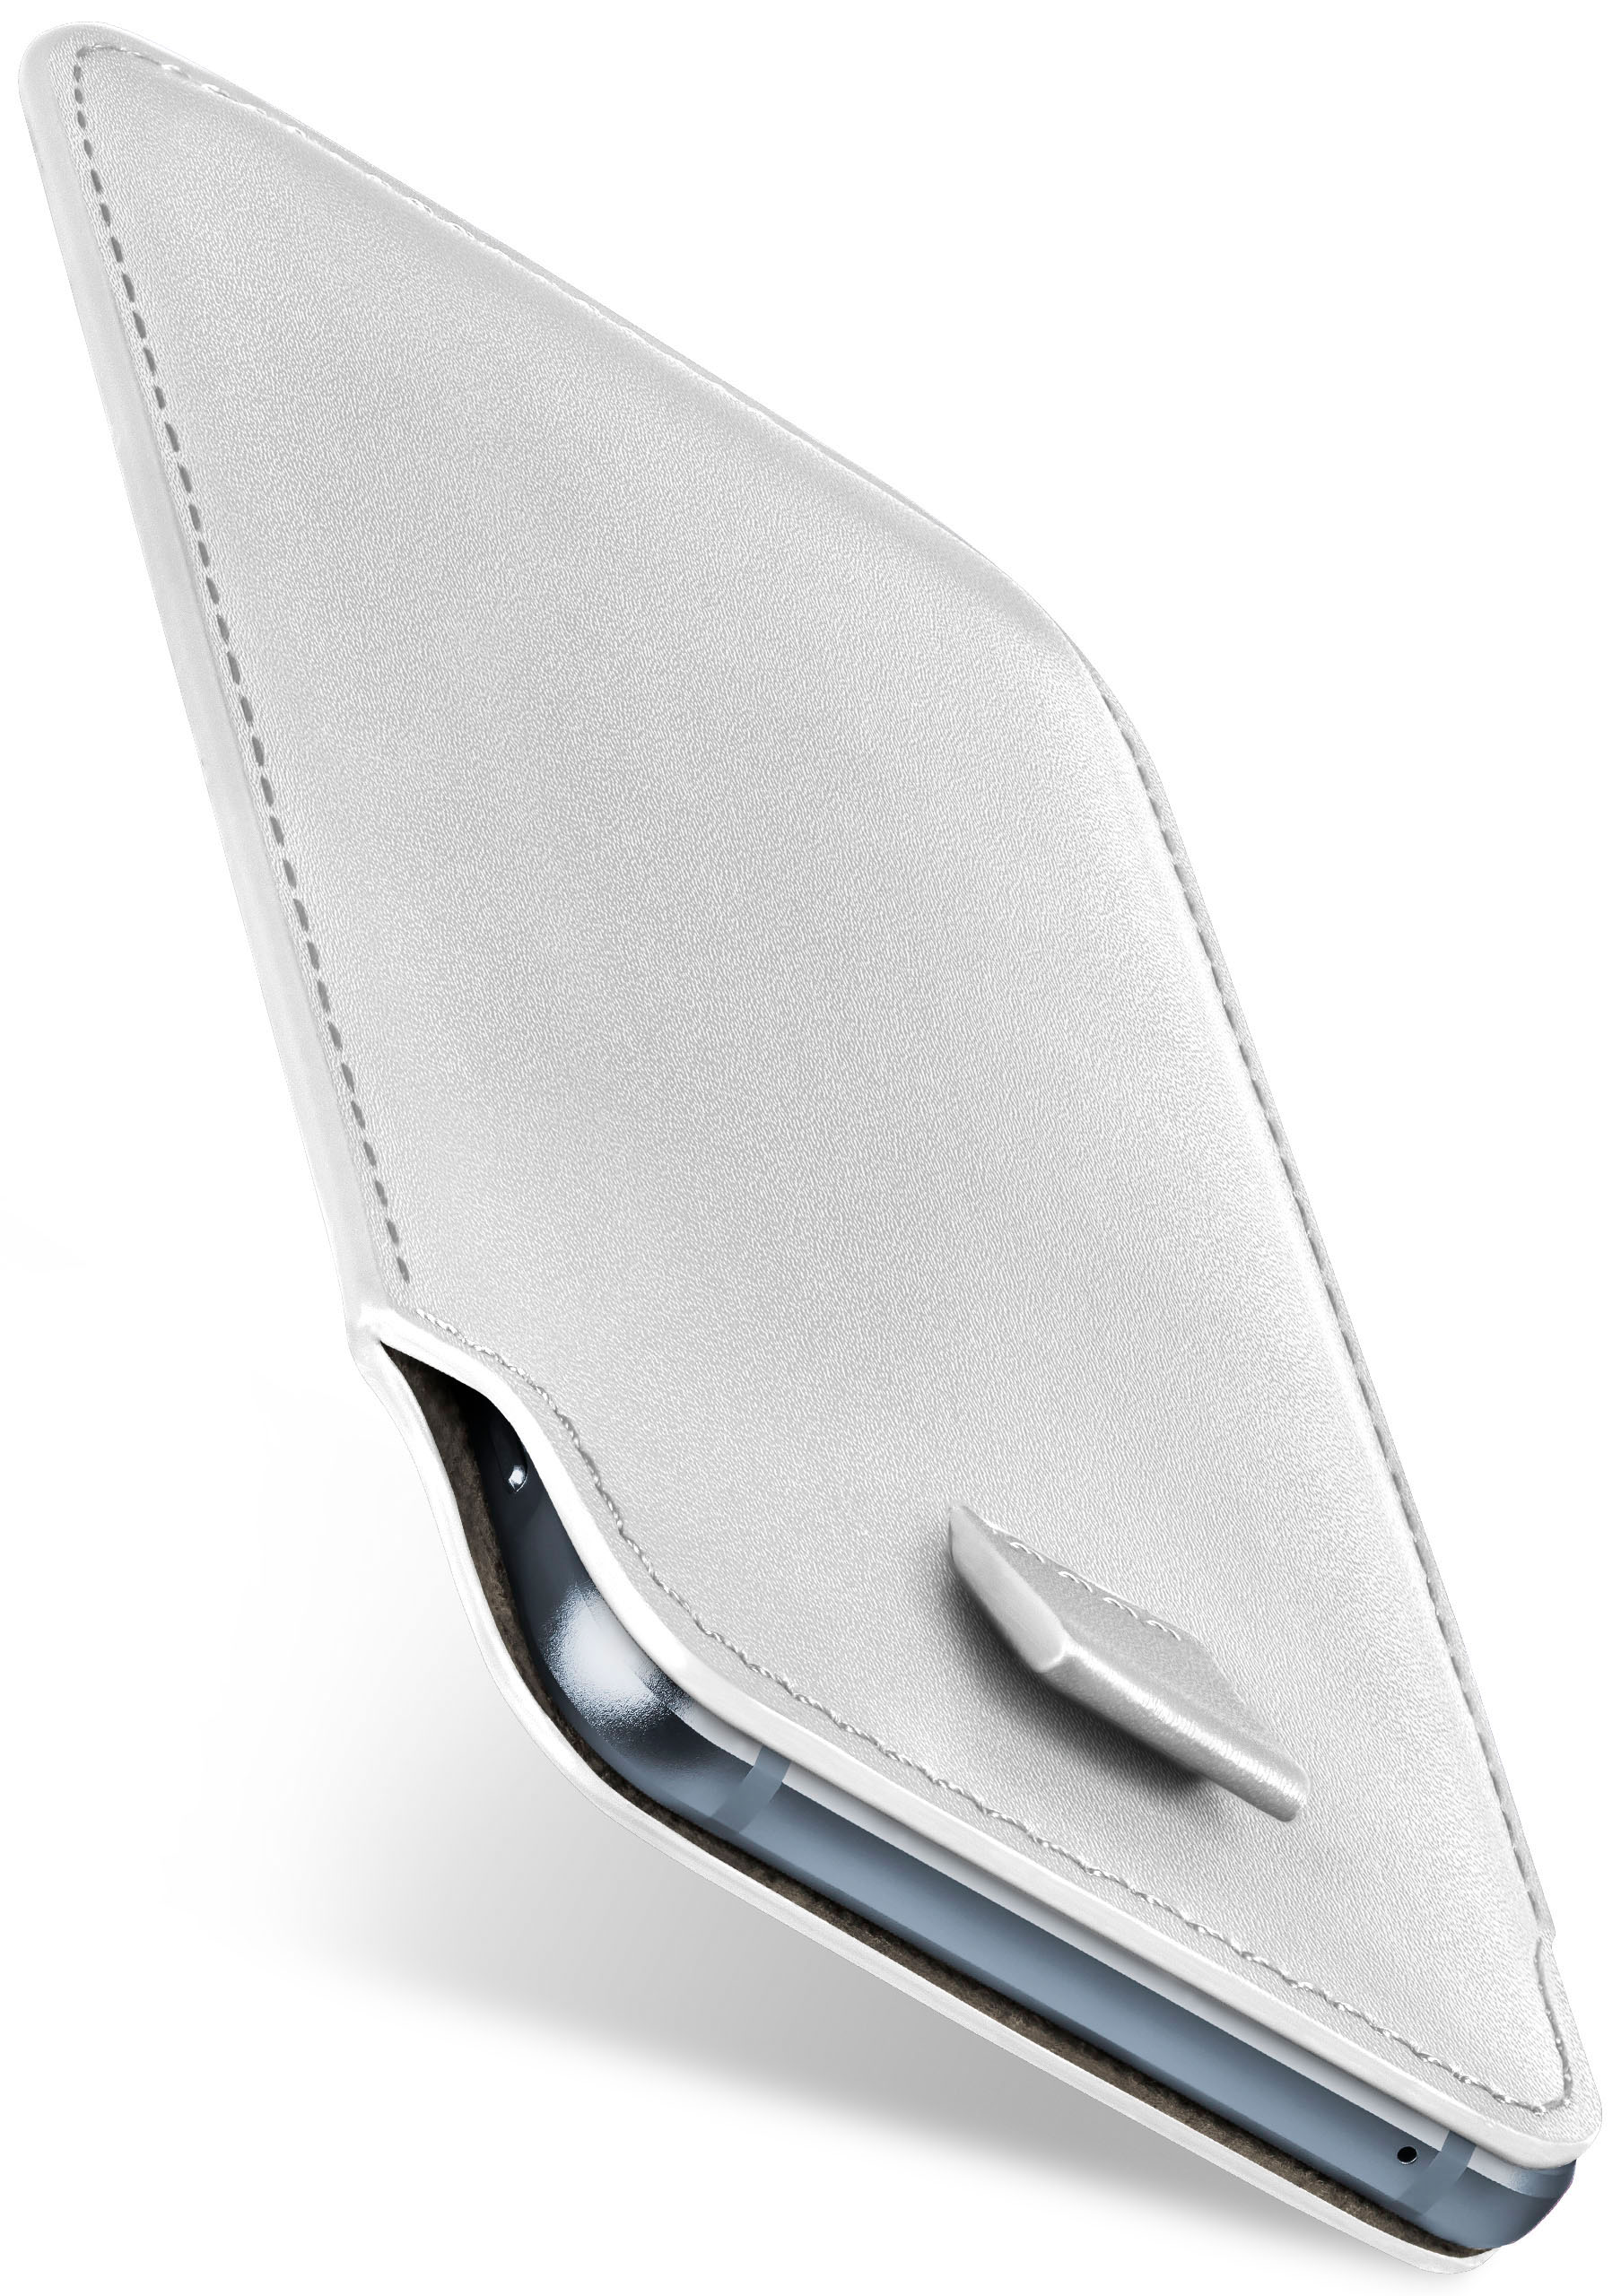 Case, Full Cover, Shiny-White MOEX 2015, Slide Lite P8 Huawei,